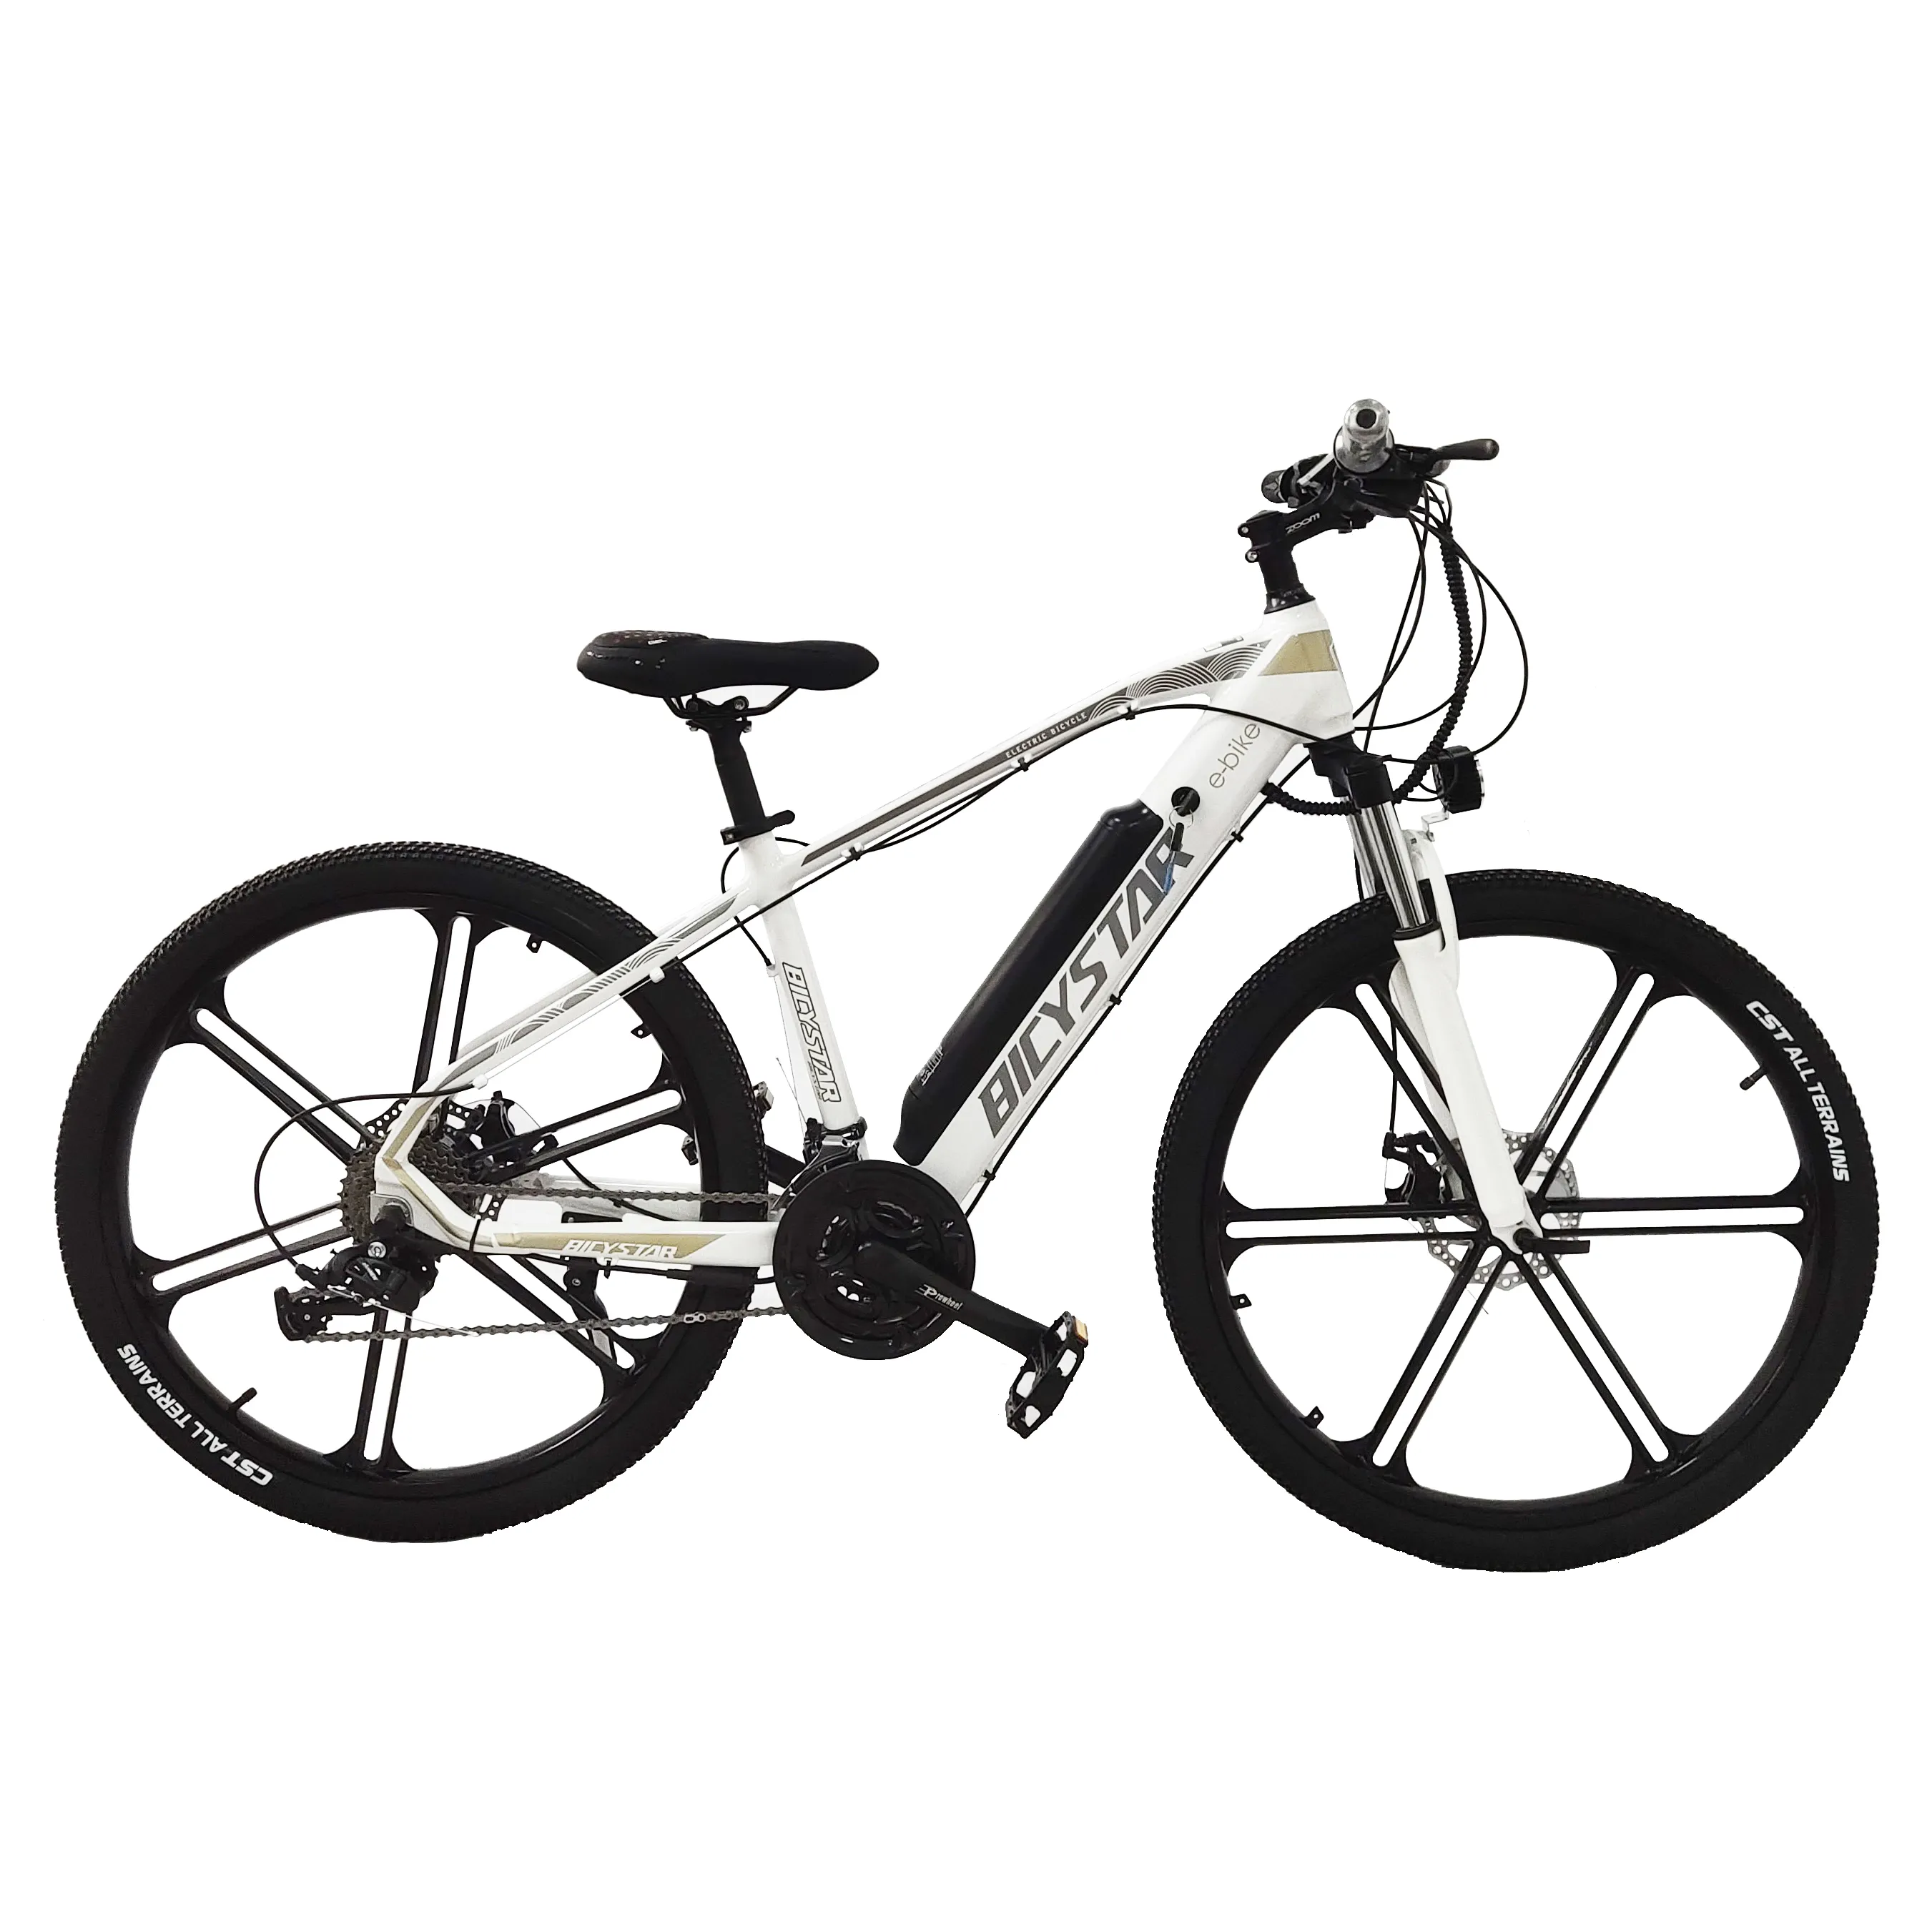 Новый модный велосипед mid drive для взрослых 29 дюймов 500 Вт со склада в Европе, горный велосипед, электрический велосипед, велосипед для продажи